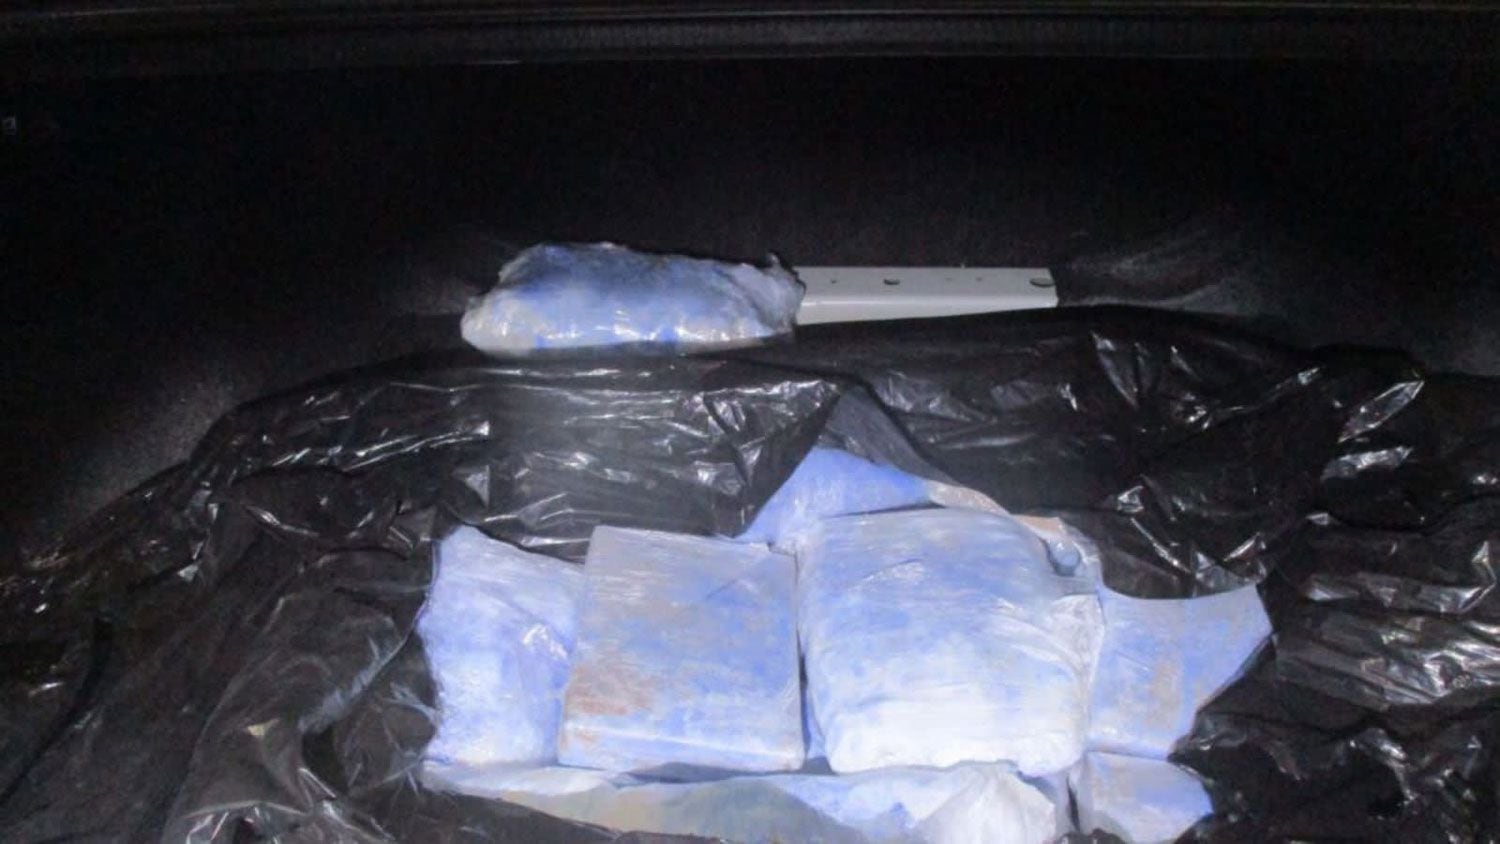 Los paquetes fueron analizados e identificados como polvo de fentanilo, pastillas rosas y azules de fentanilo, metanfetamina, cocaína y heroína.